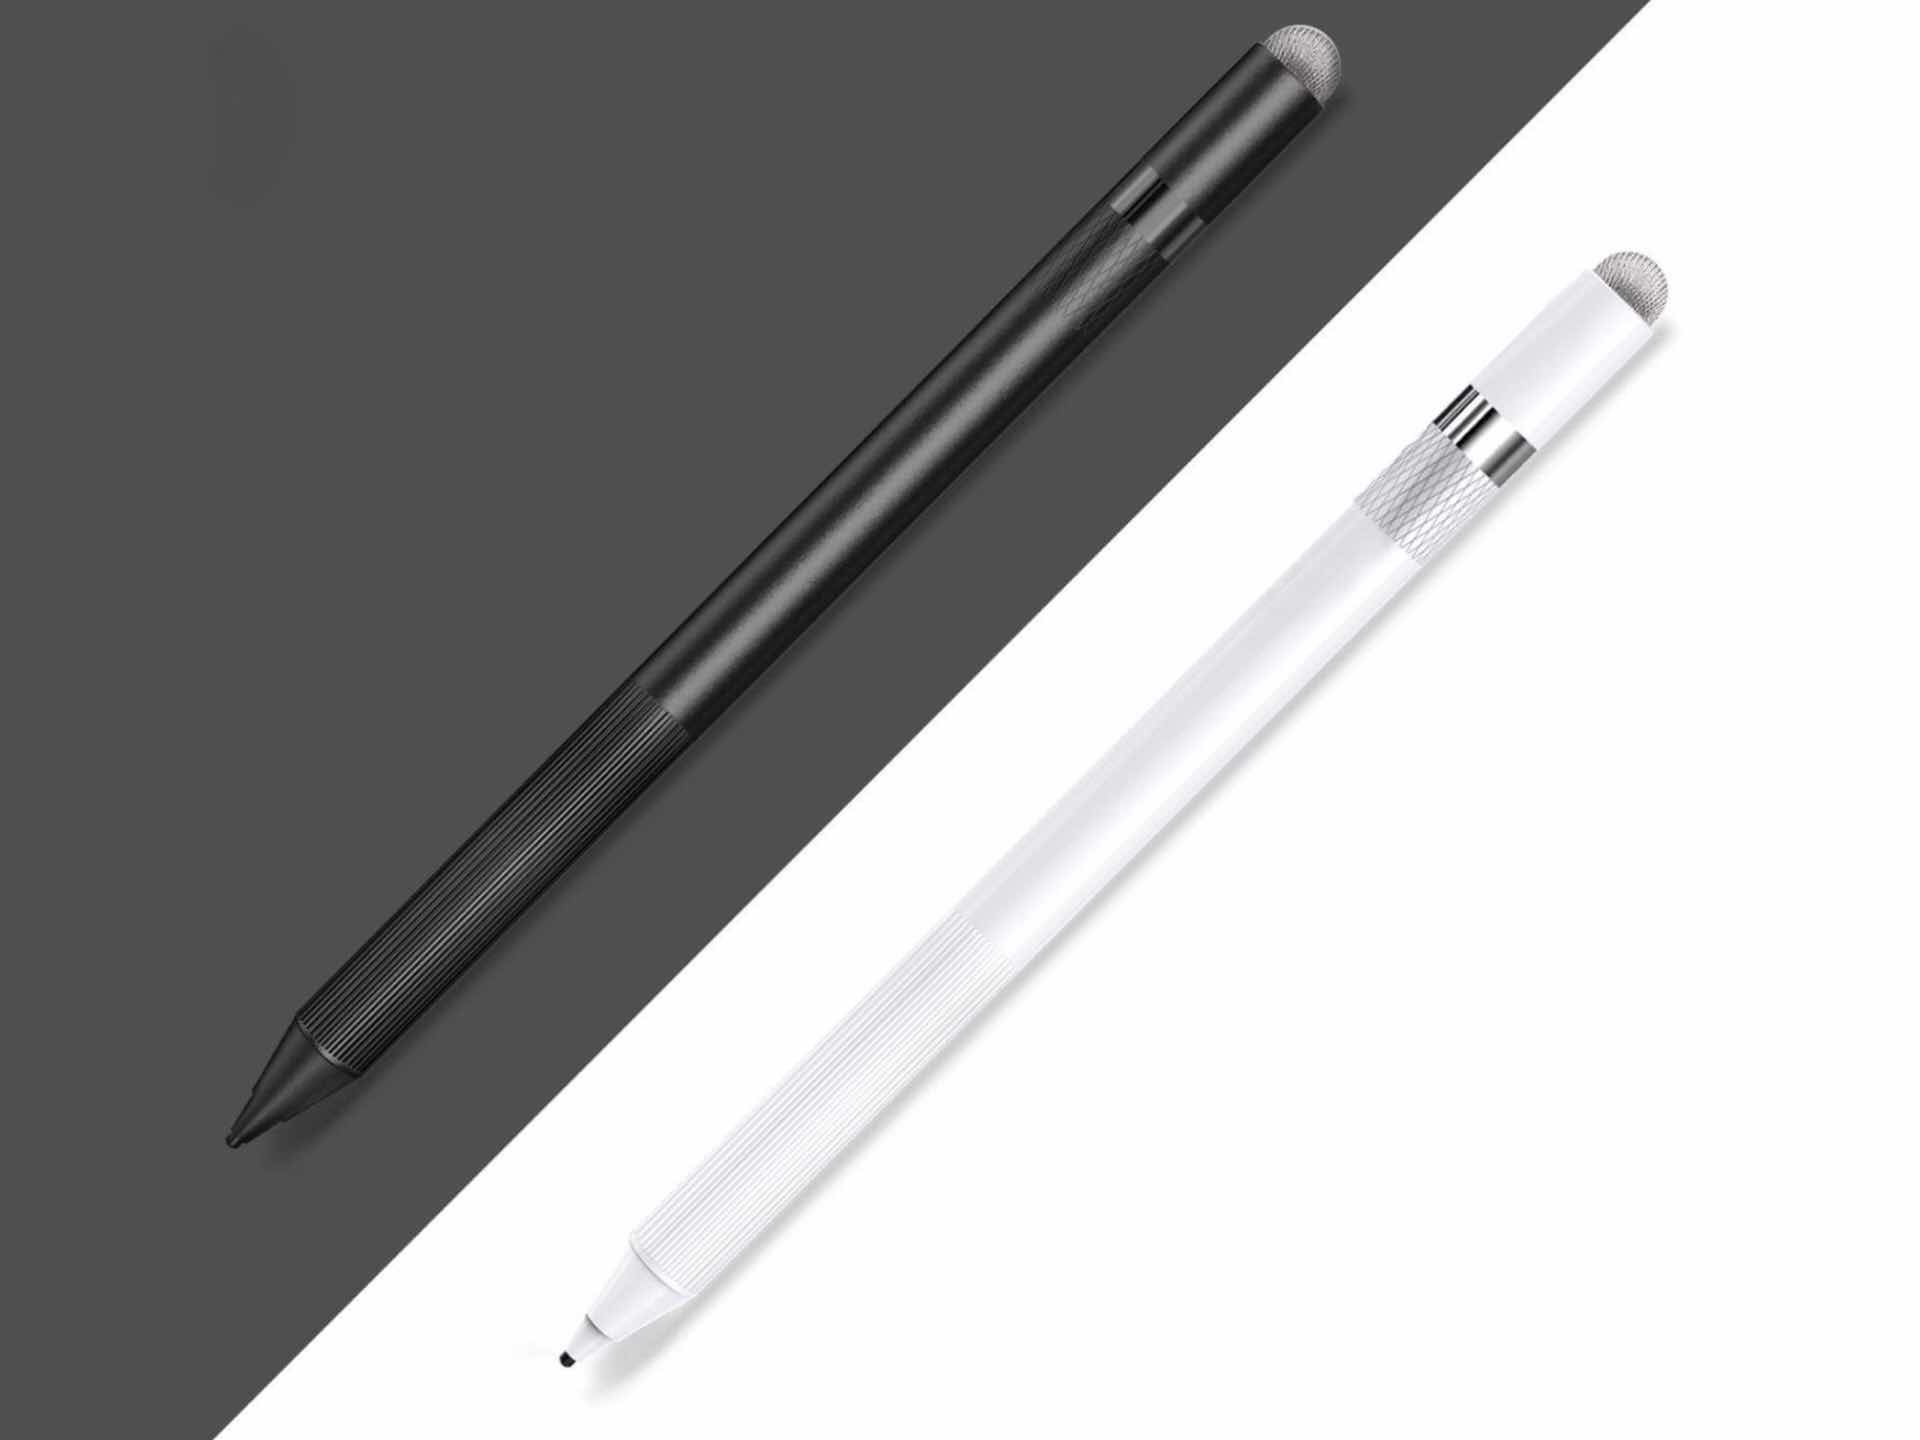 meko-active-digital-stylus-pen